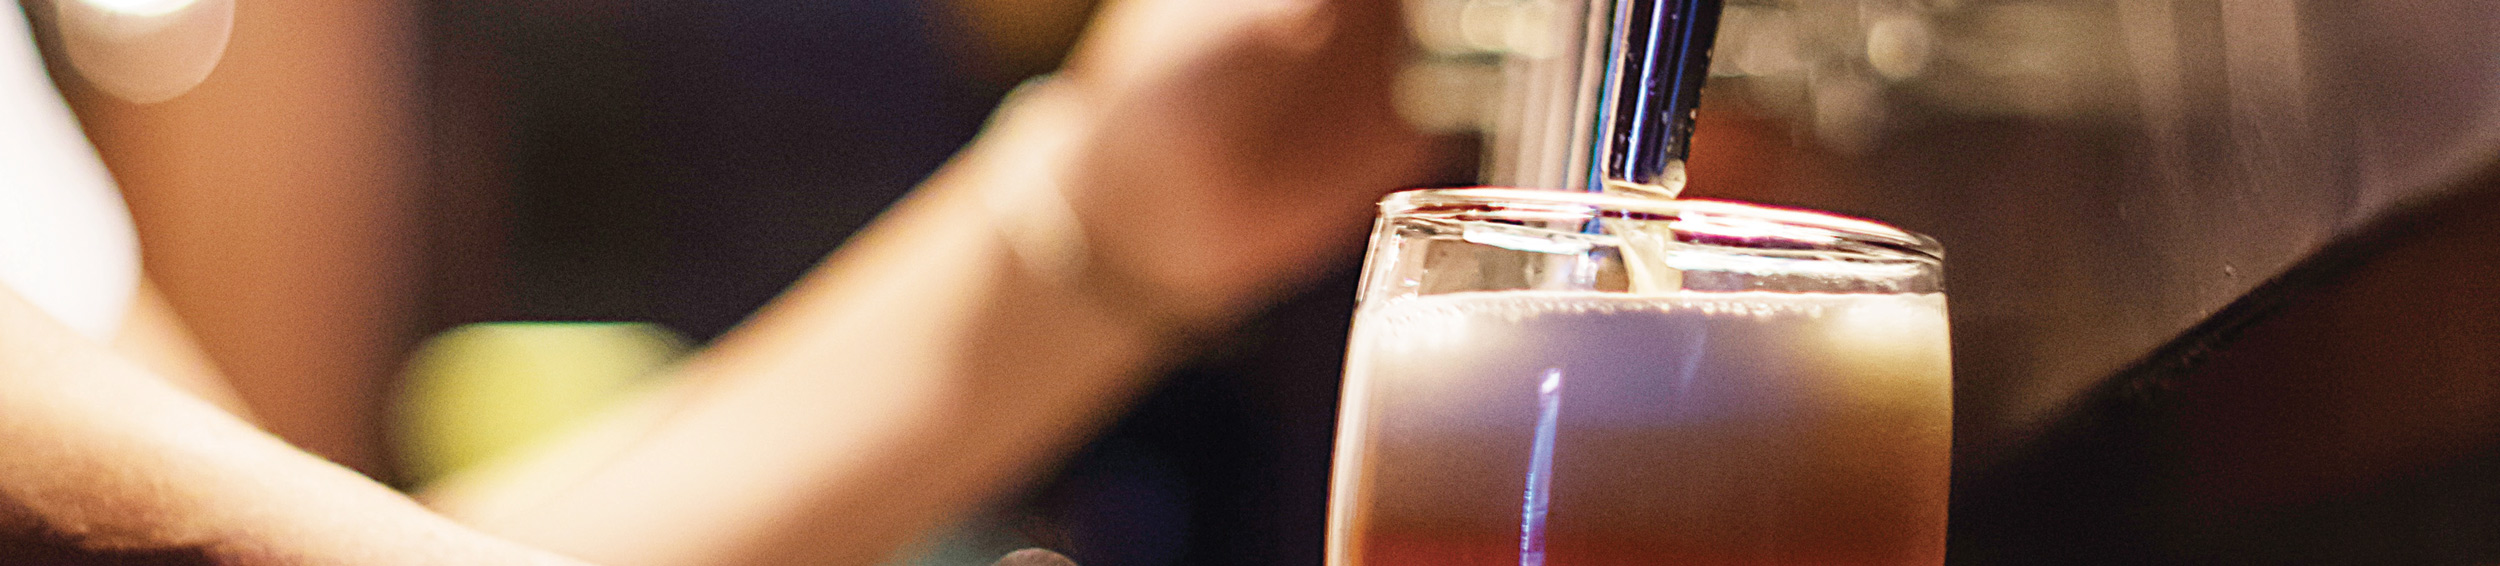 Birra Yaki Ipa | Birra Dell'eremo